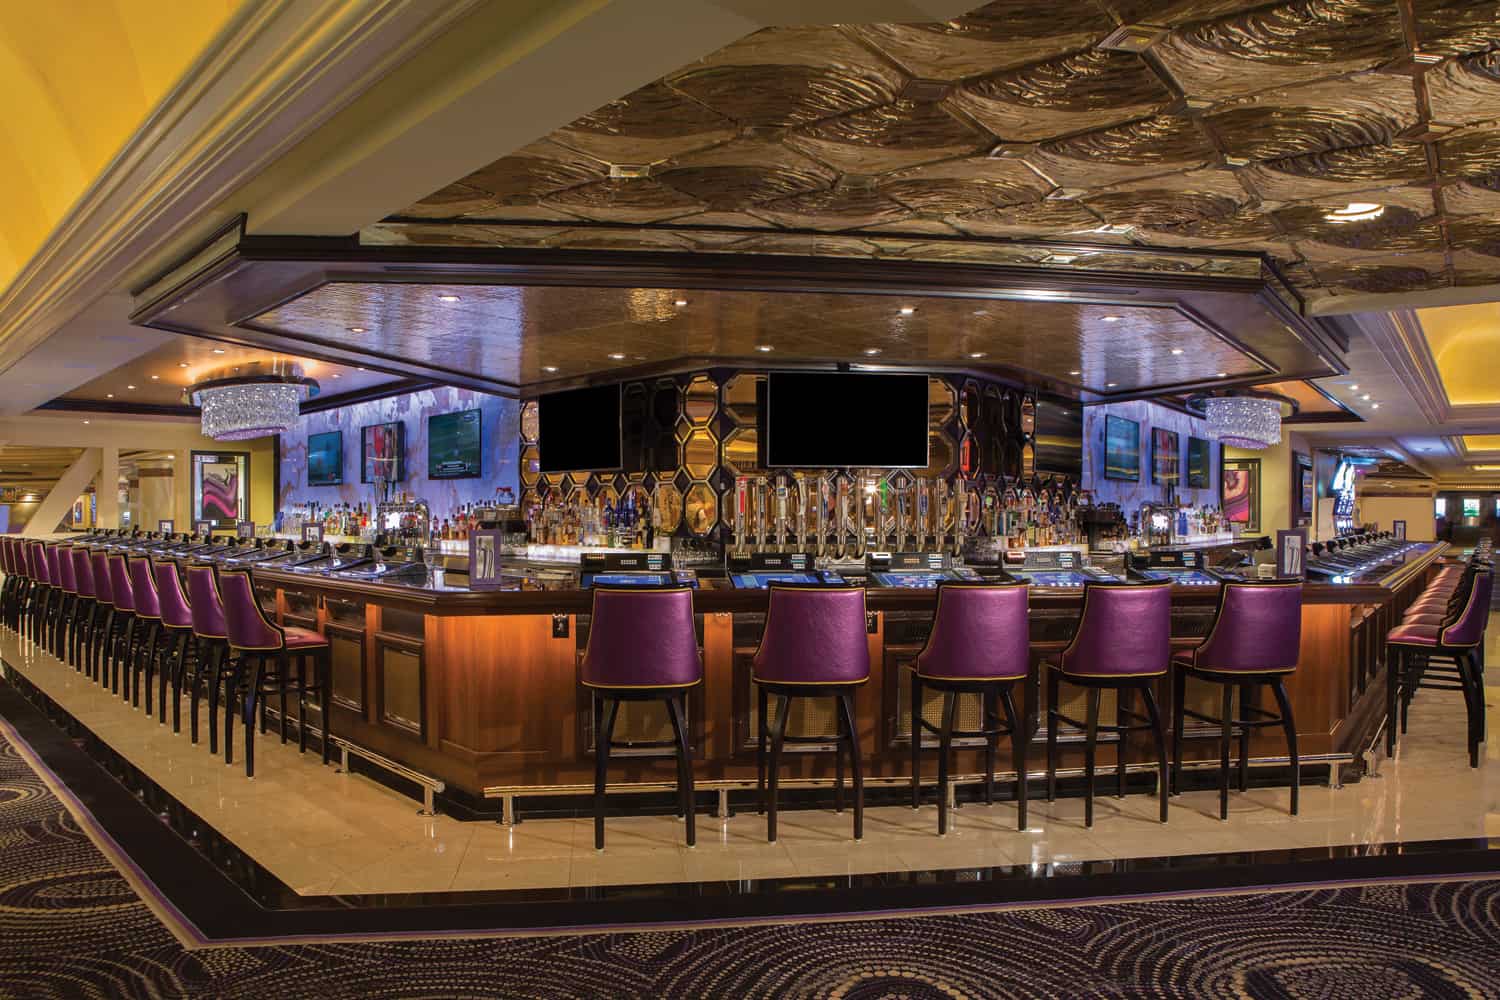 Harrah's Hotel Las Vegas: habitaciones, restaurantes, espectáculos y piscina